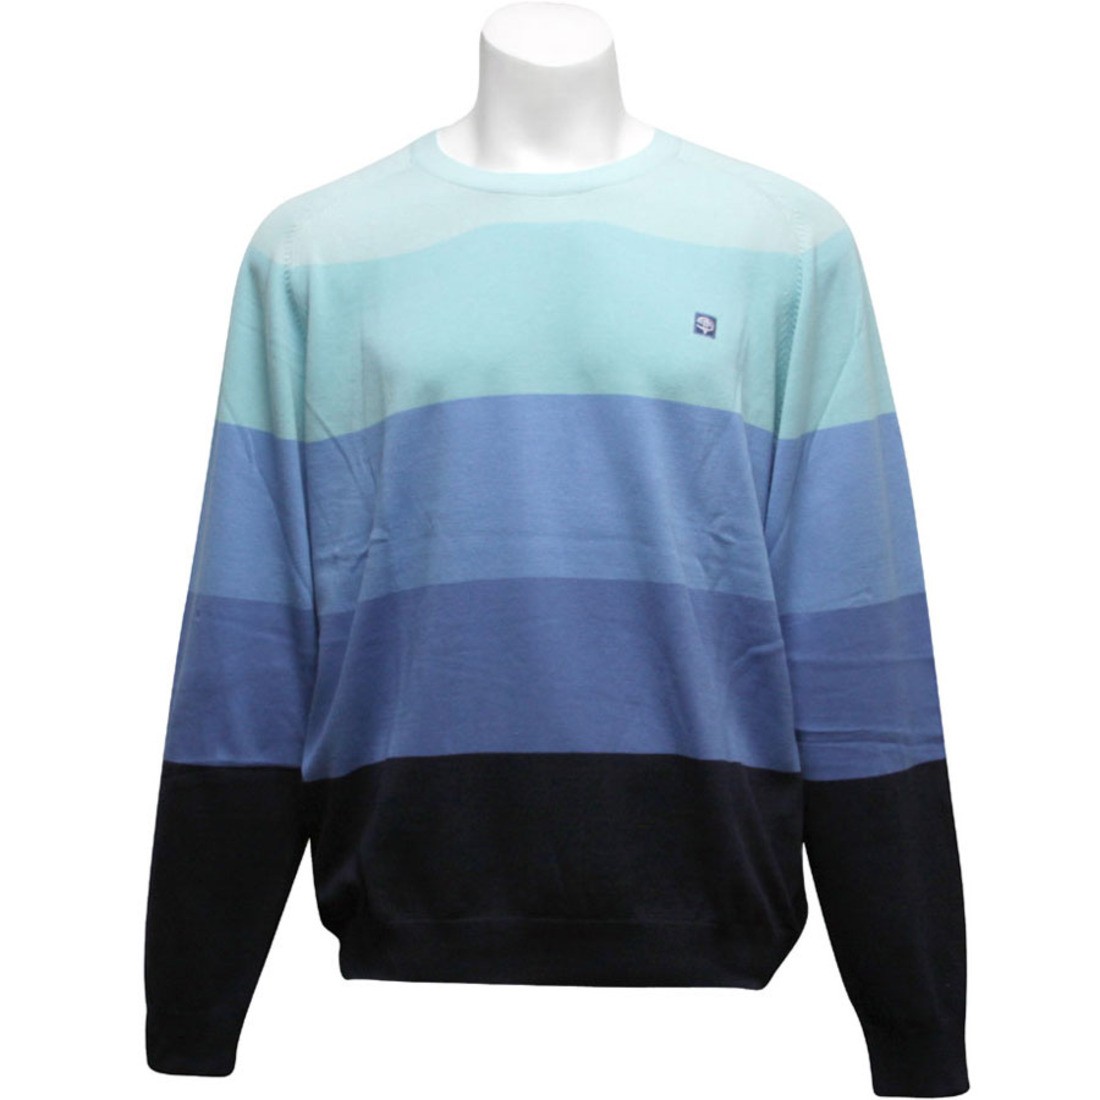 Sneaktip Ninety Five Sweater (blue)